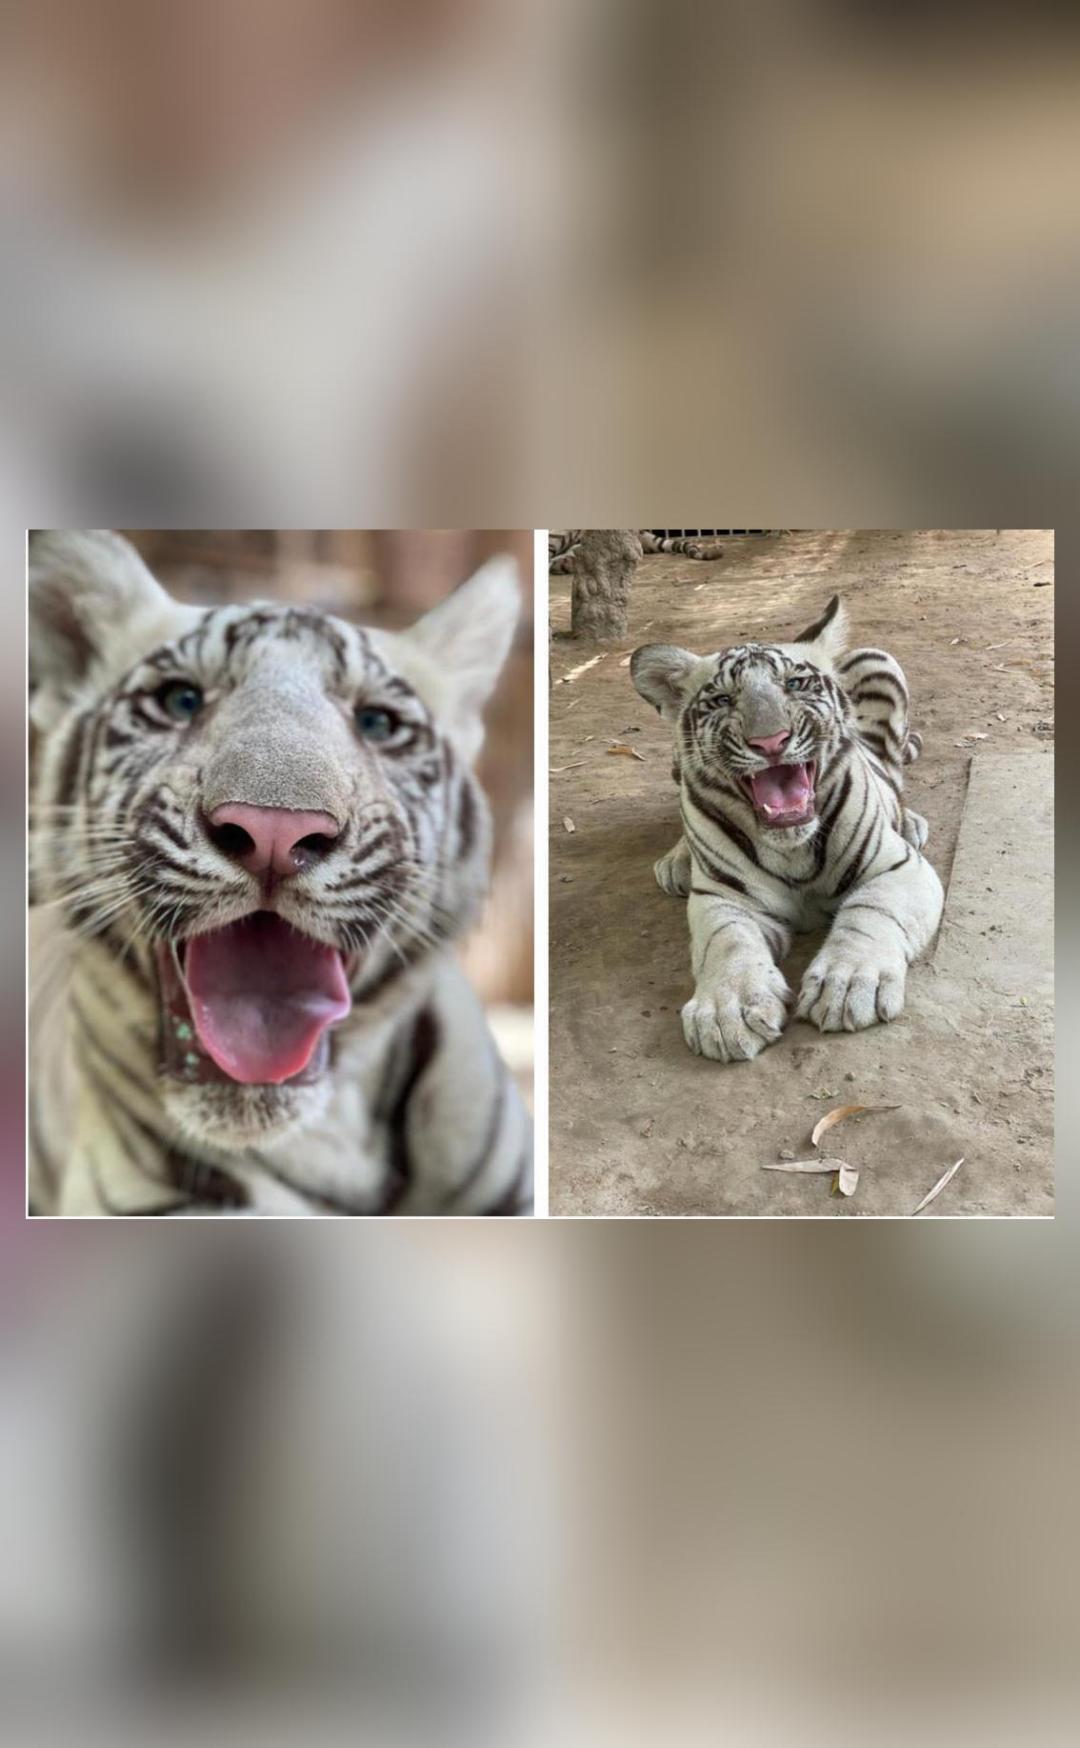 2 white tiger cubs presented to public in Delhi zoo - EFE Noticias